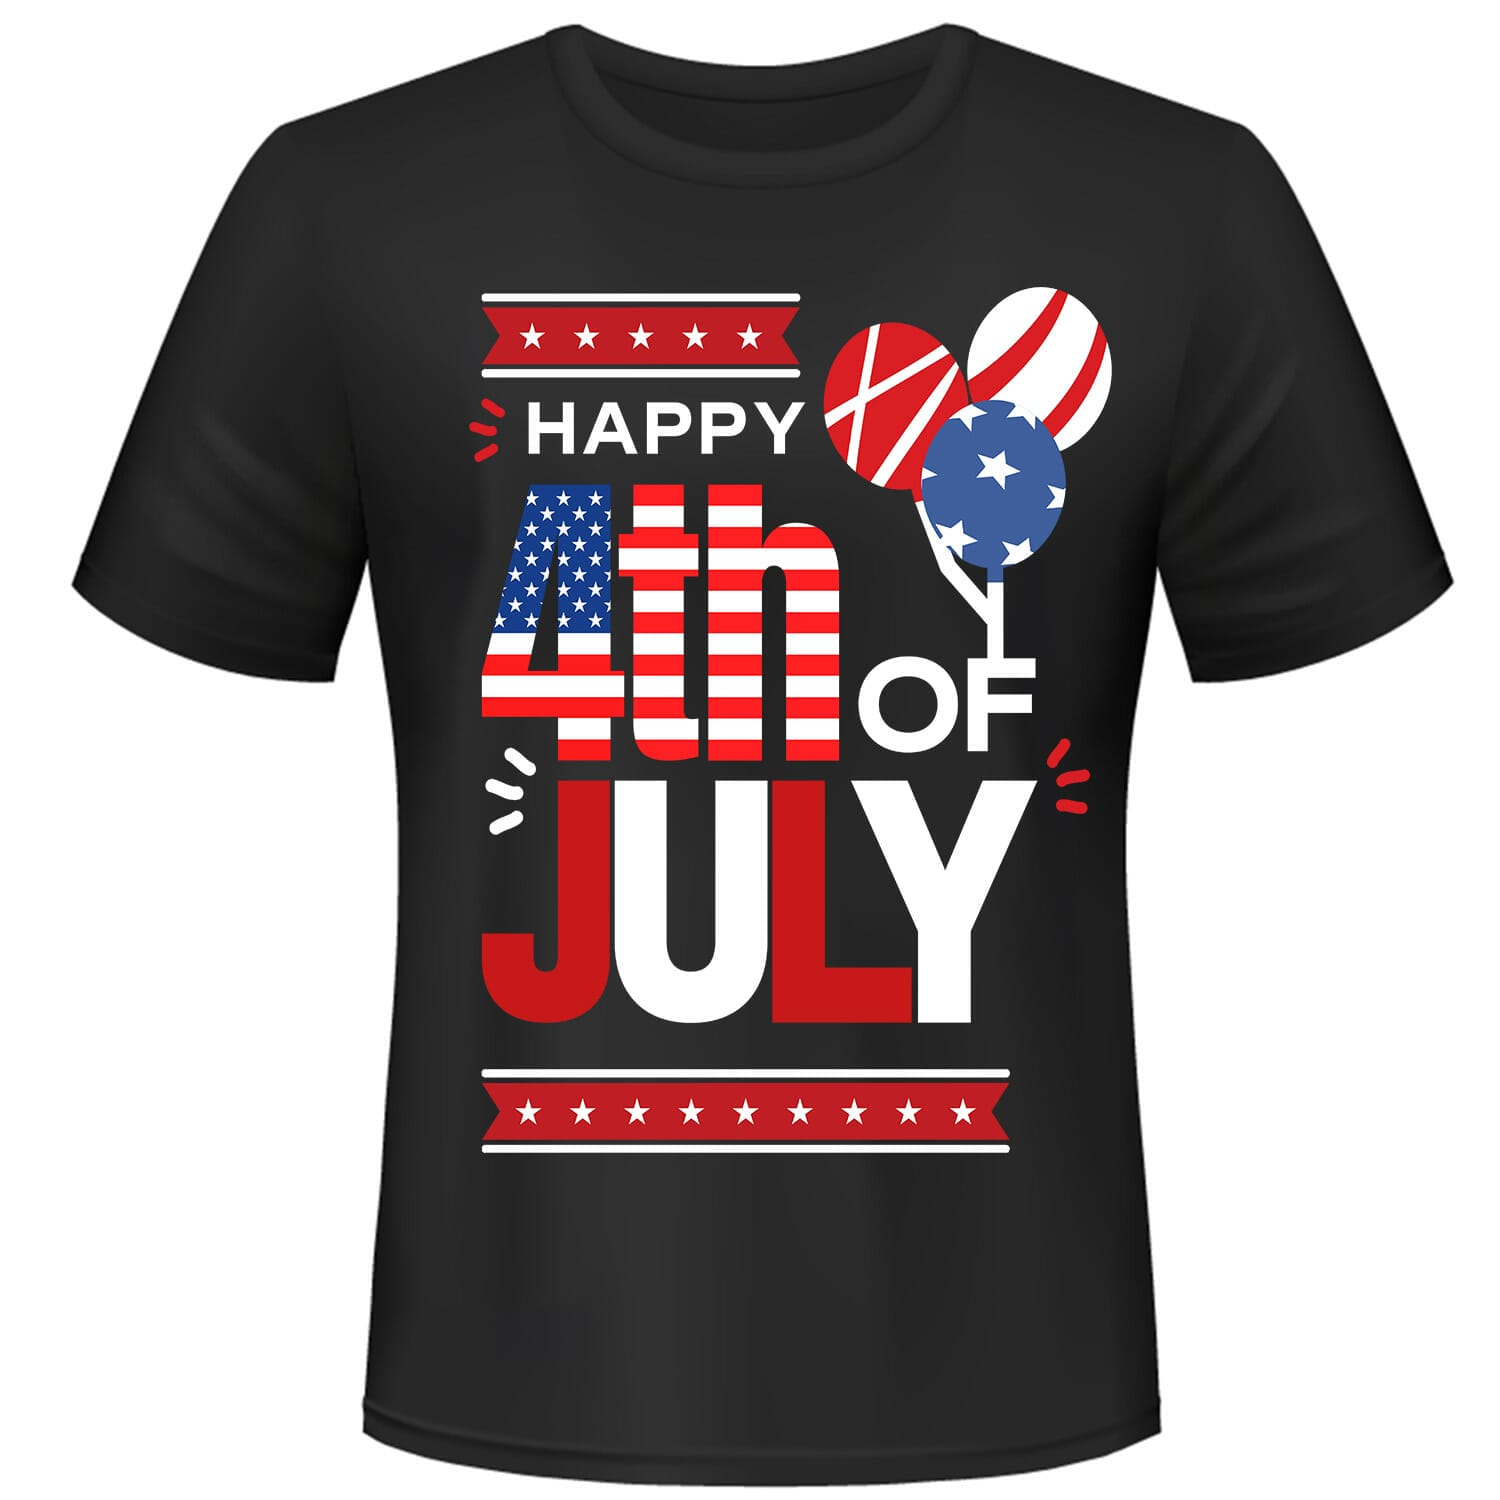 Happy 4th of July tshirt design